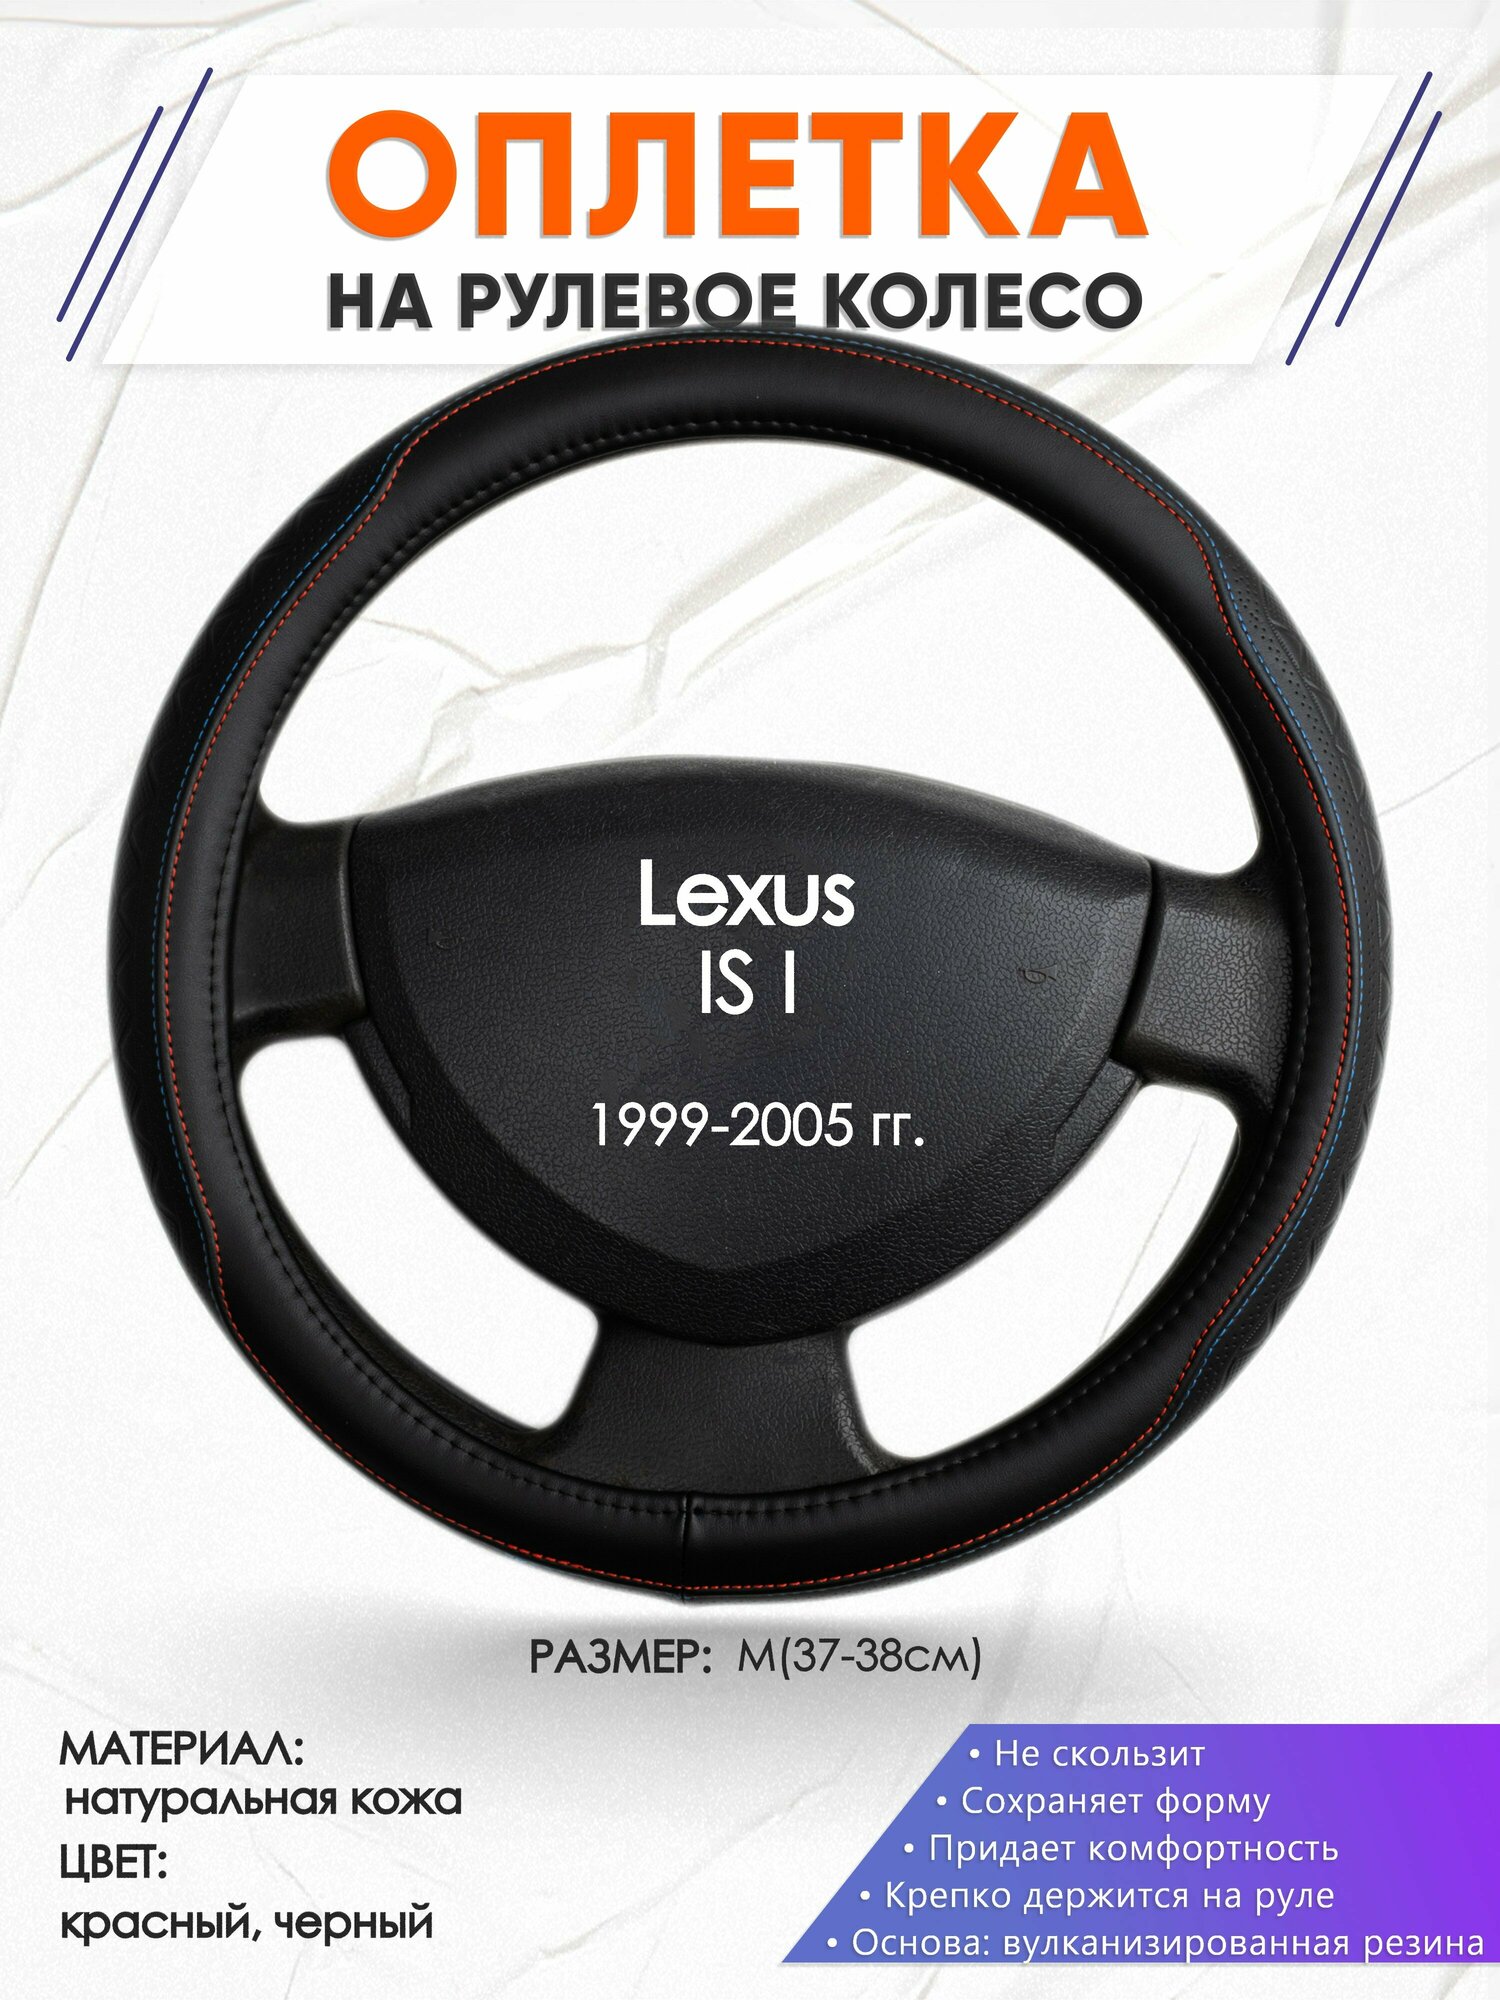 Оплетка наруль для Lexus IS I(Лексус ИС 1) 1999-2005 годов выпуска, размер M(37-38см), Натуральная кожа 89